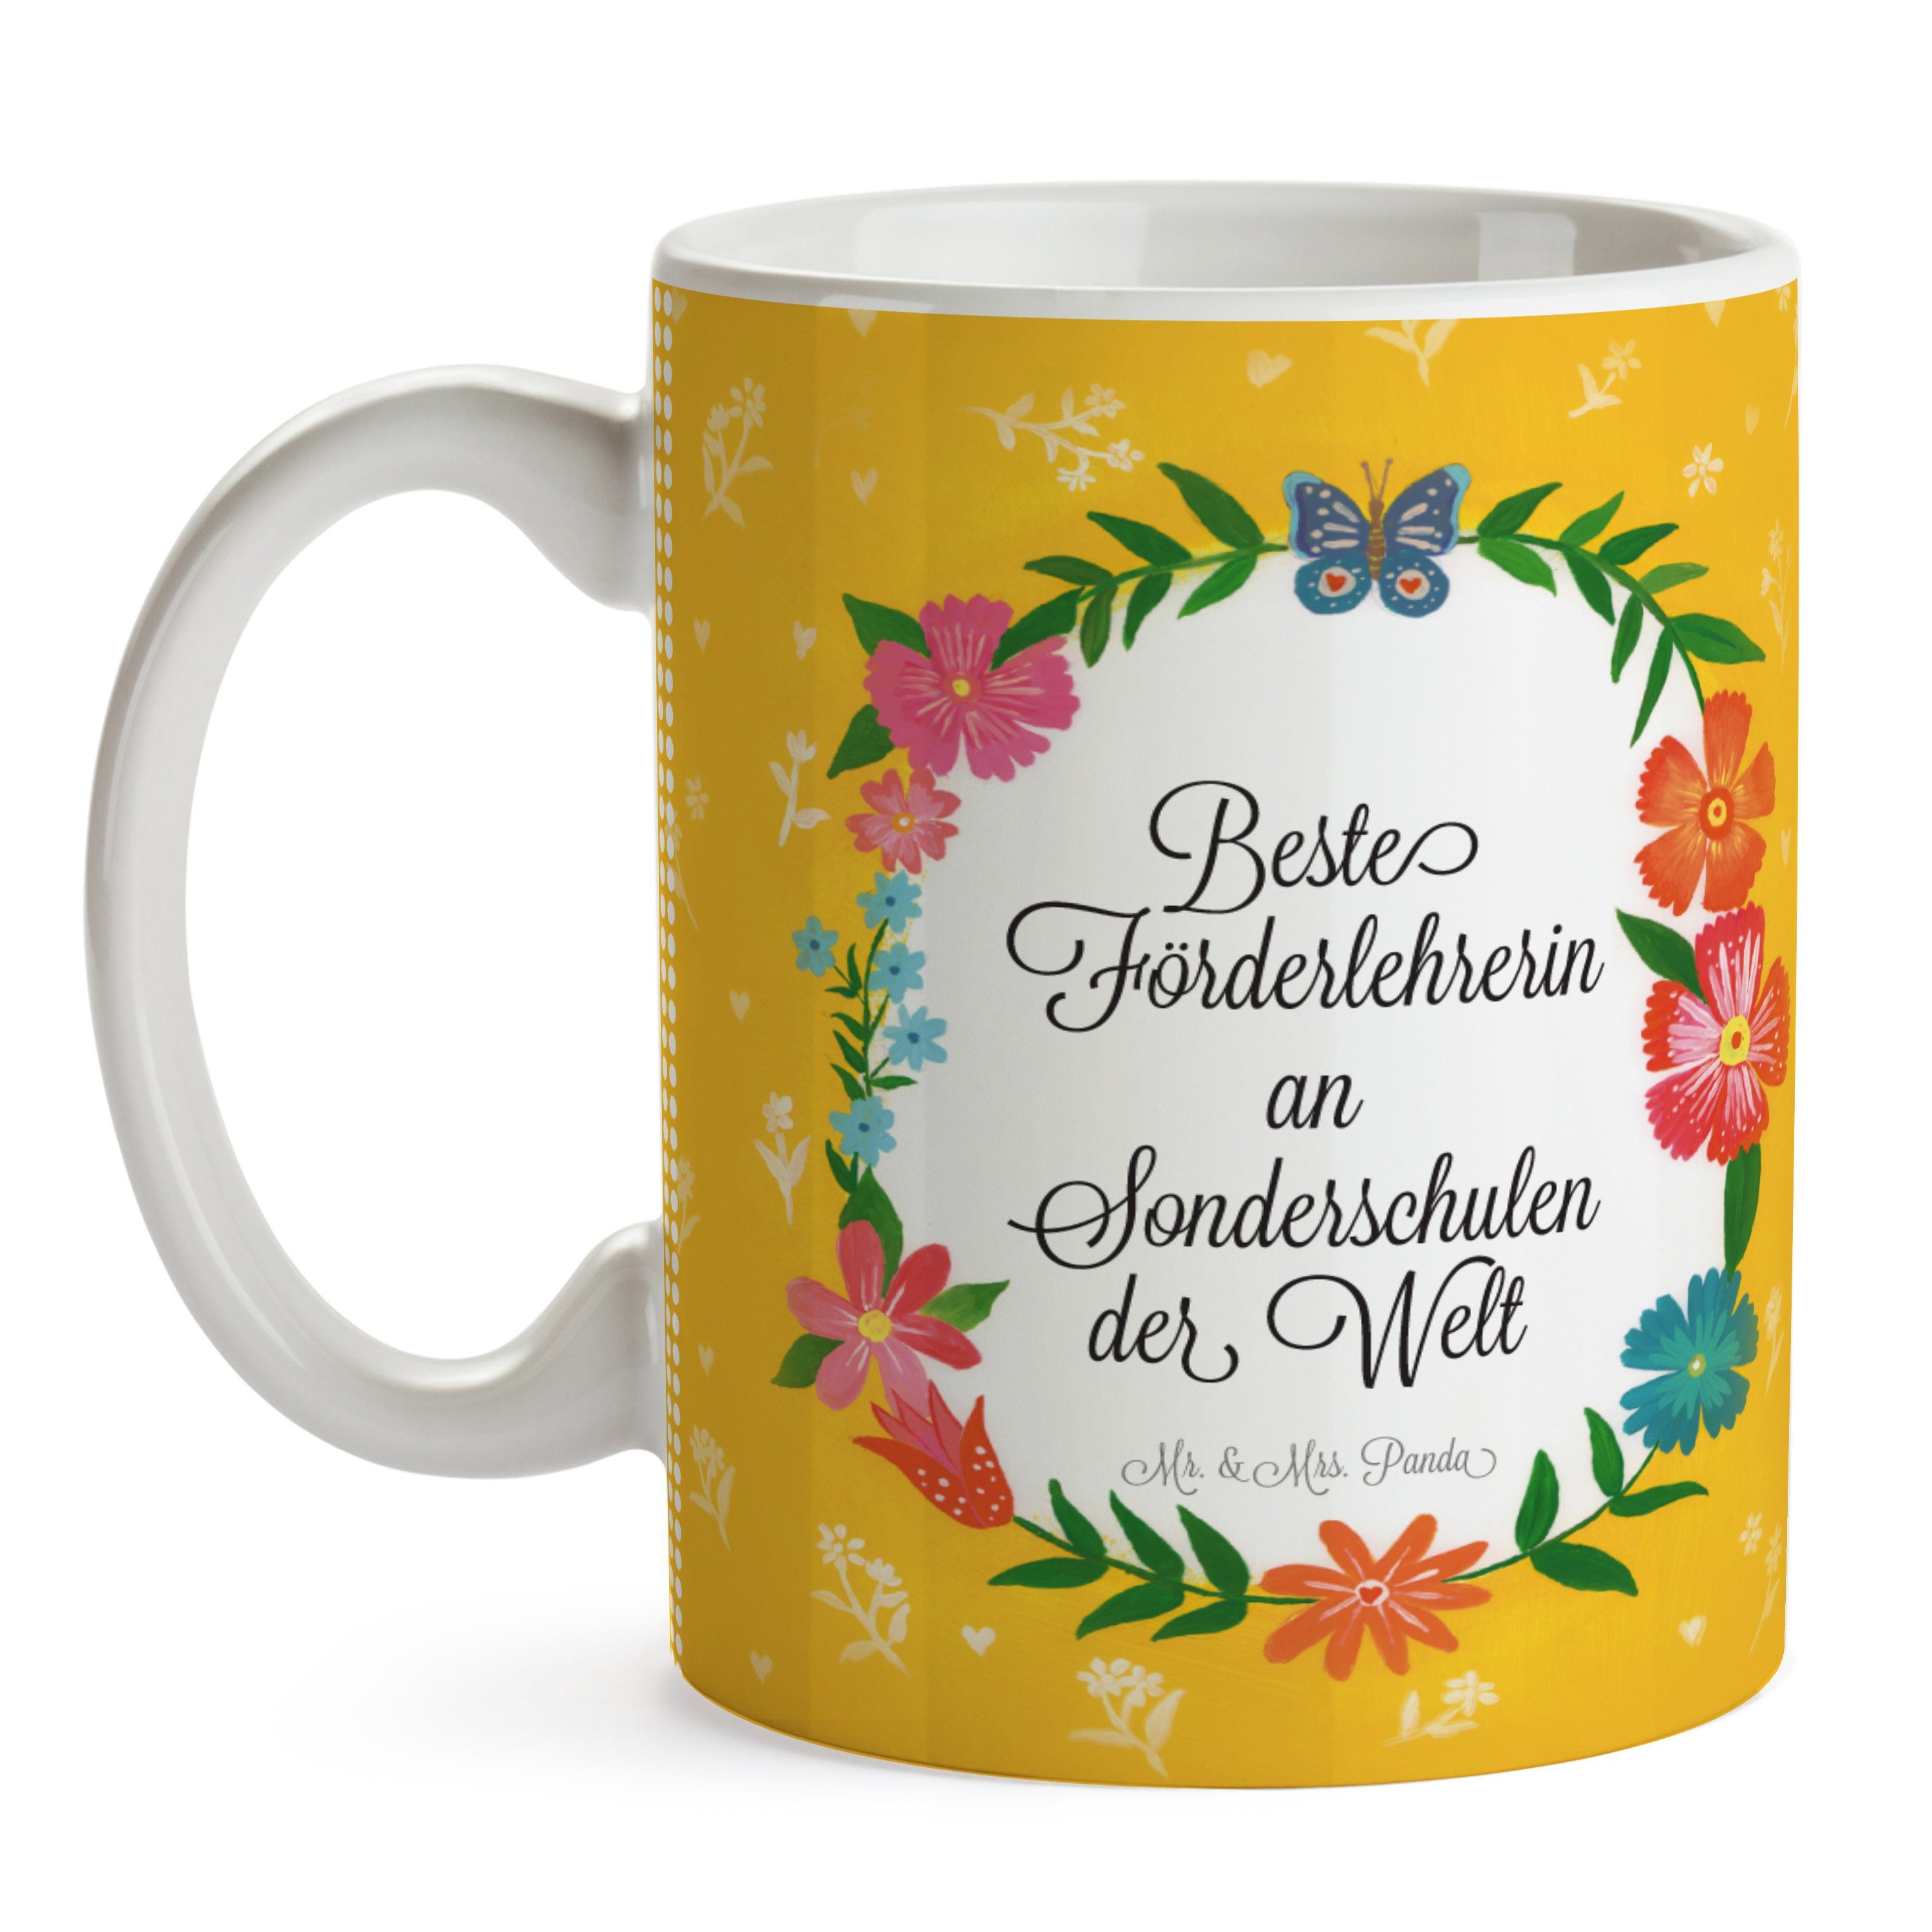 Mr. & Sonderschulen Mrs. Panda Sprüche, Tasse an Keramik Schenken, Tasse Förderlehrerin Geschenk, 